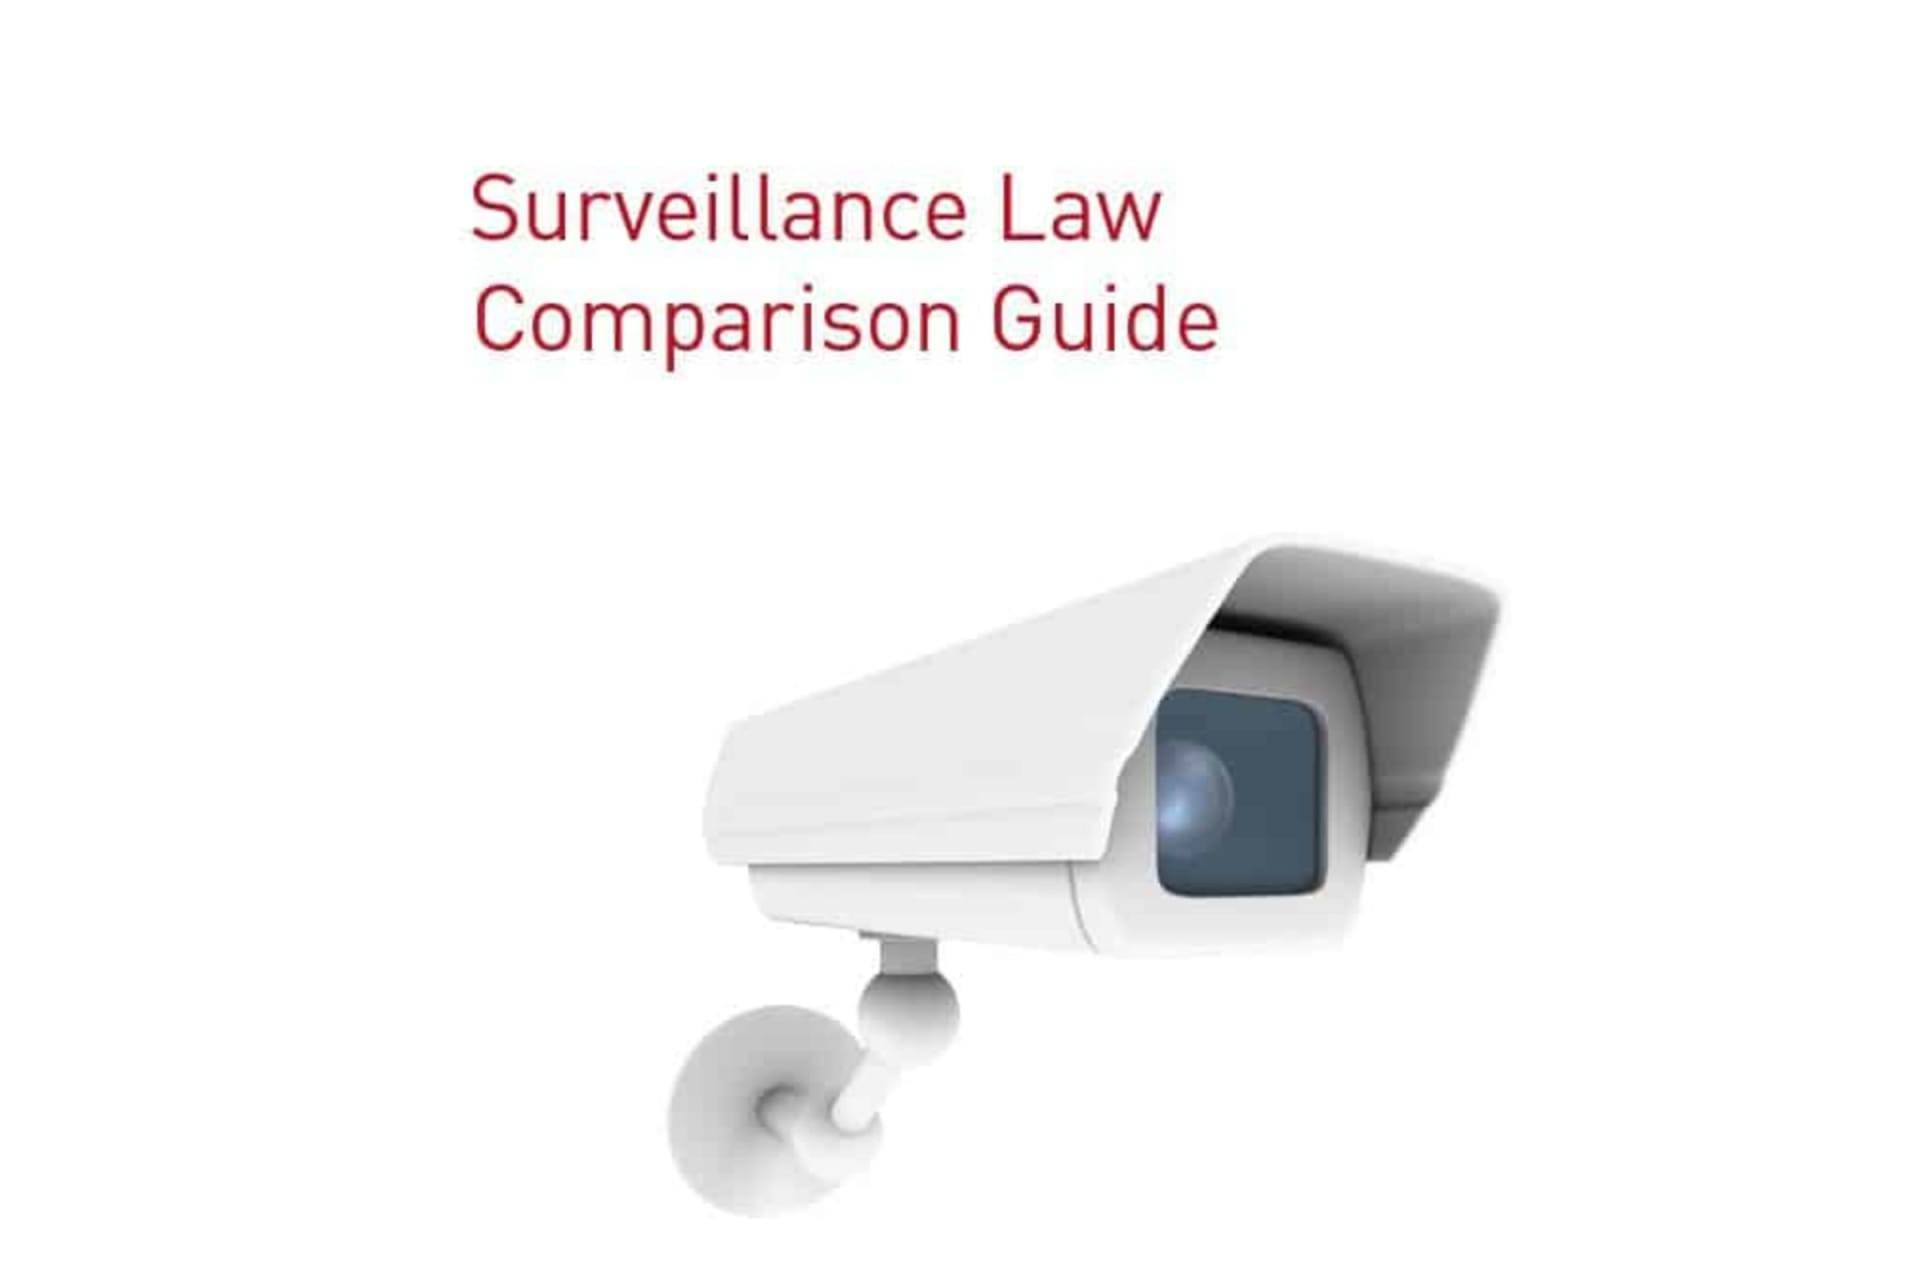 Surveillance law comparison guide